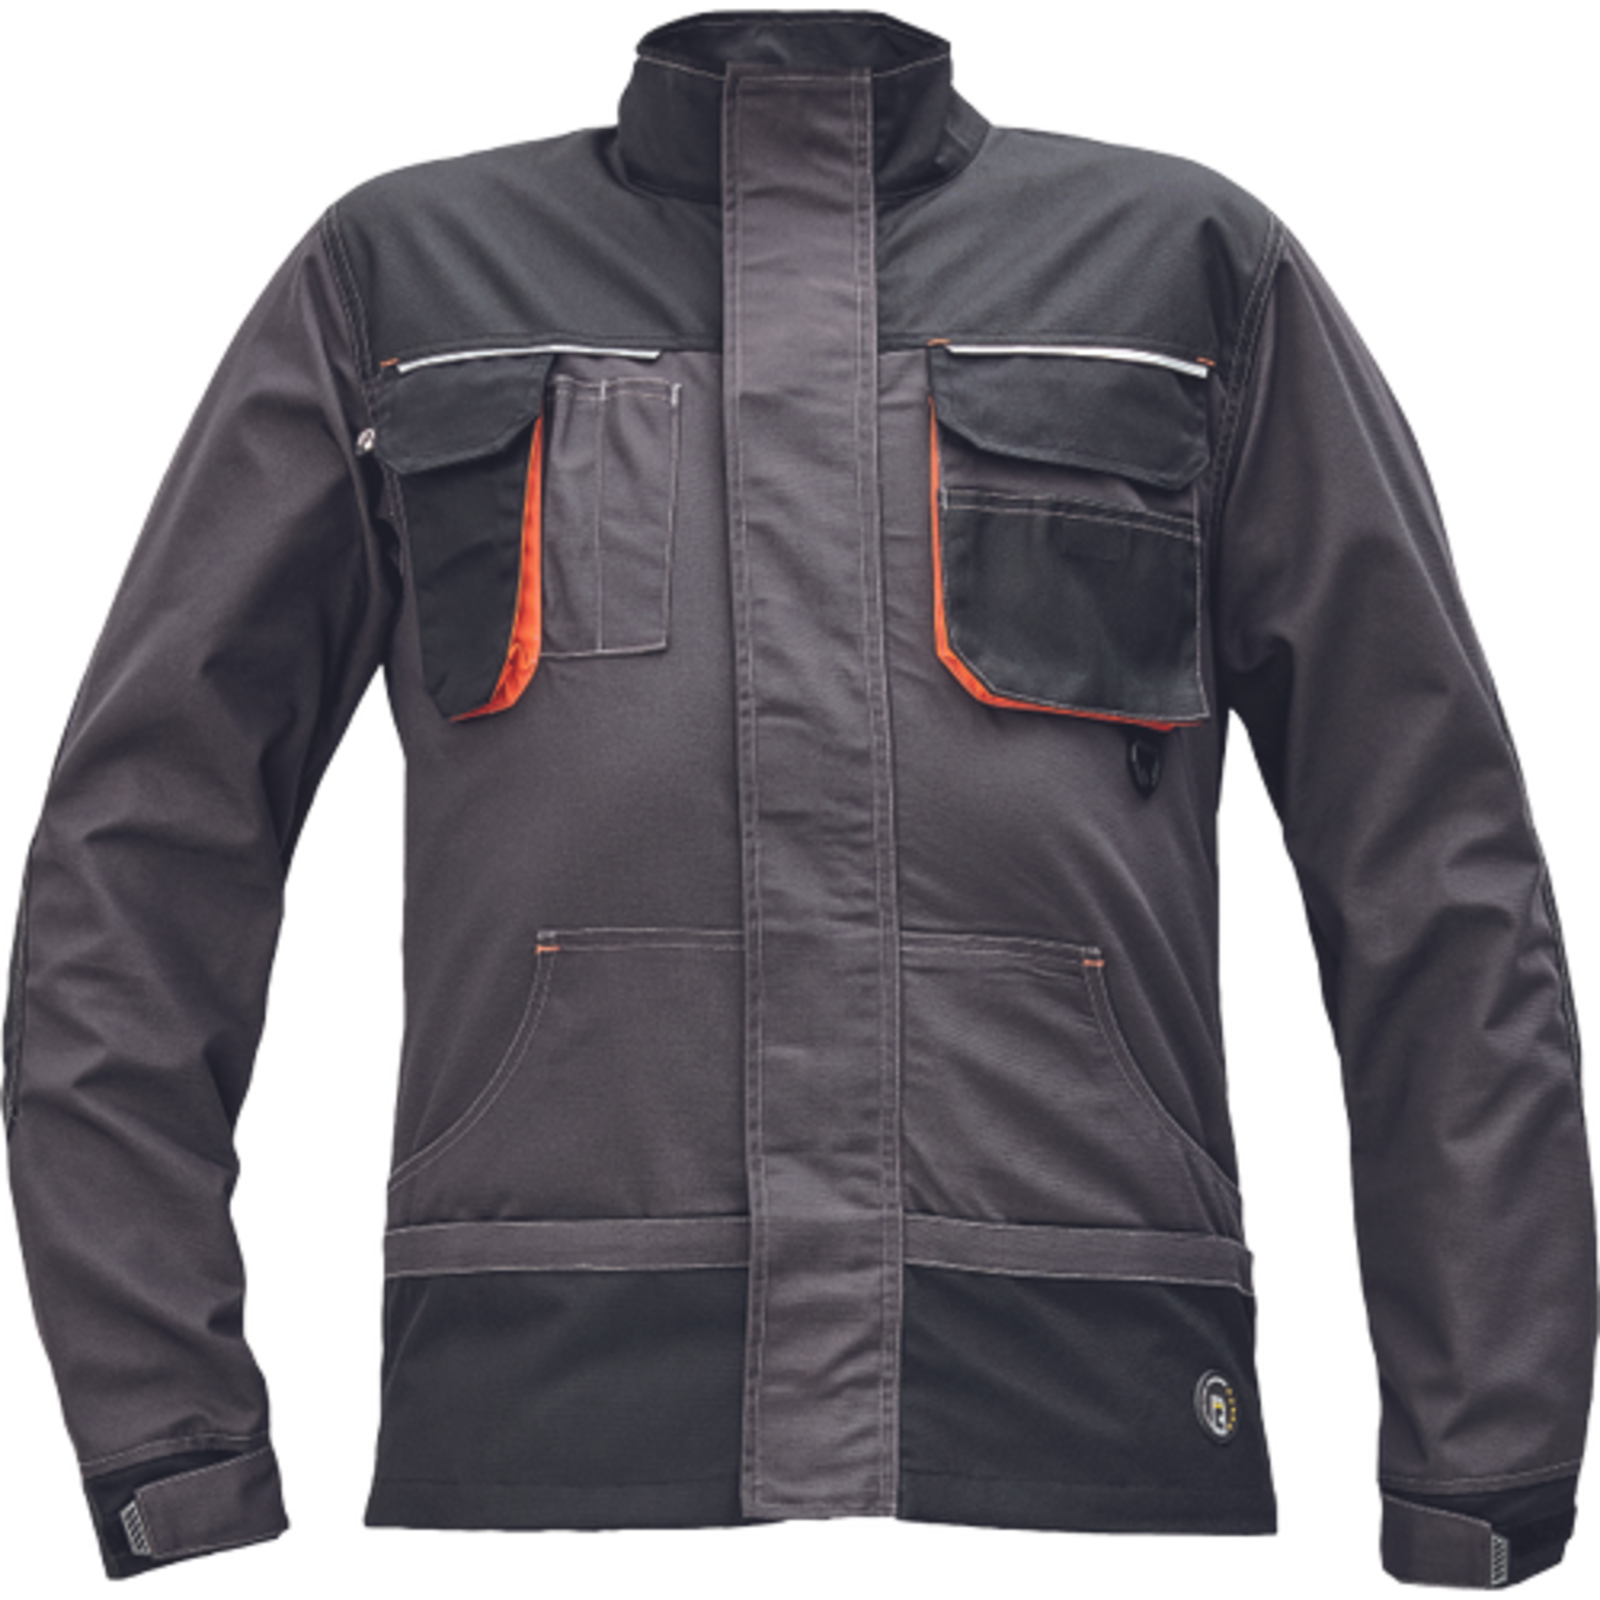 Odolná montérková bunda Emerton Plus - veľkosť: 46, farba: antracit/oranžová